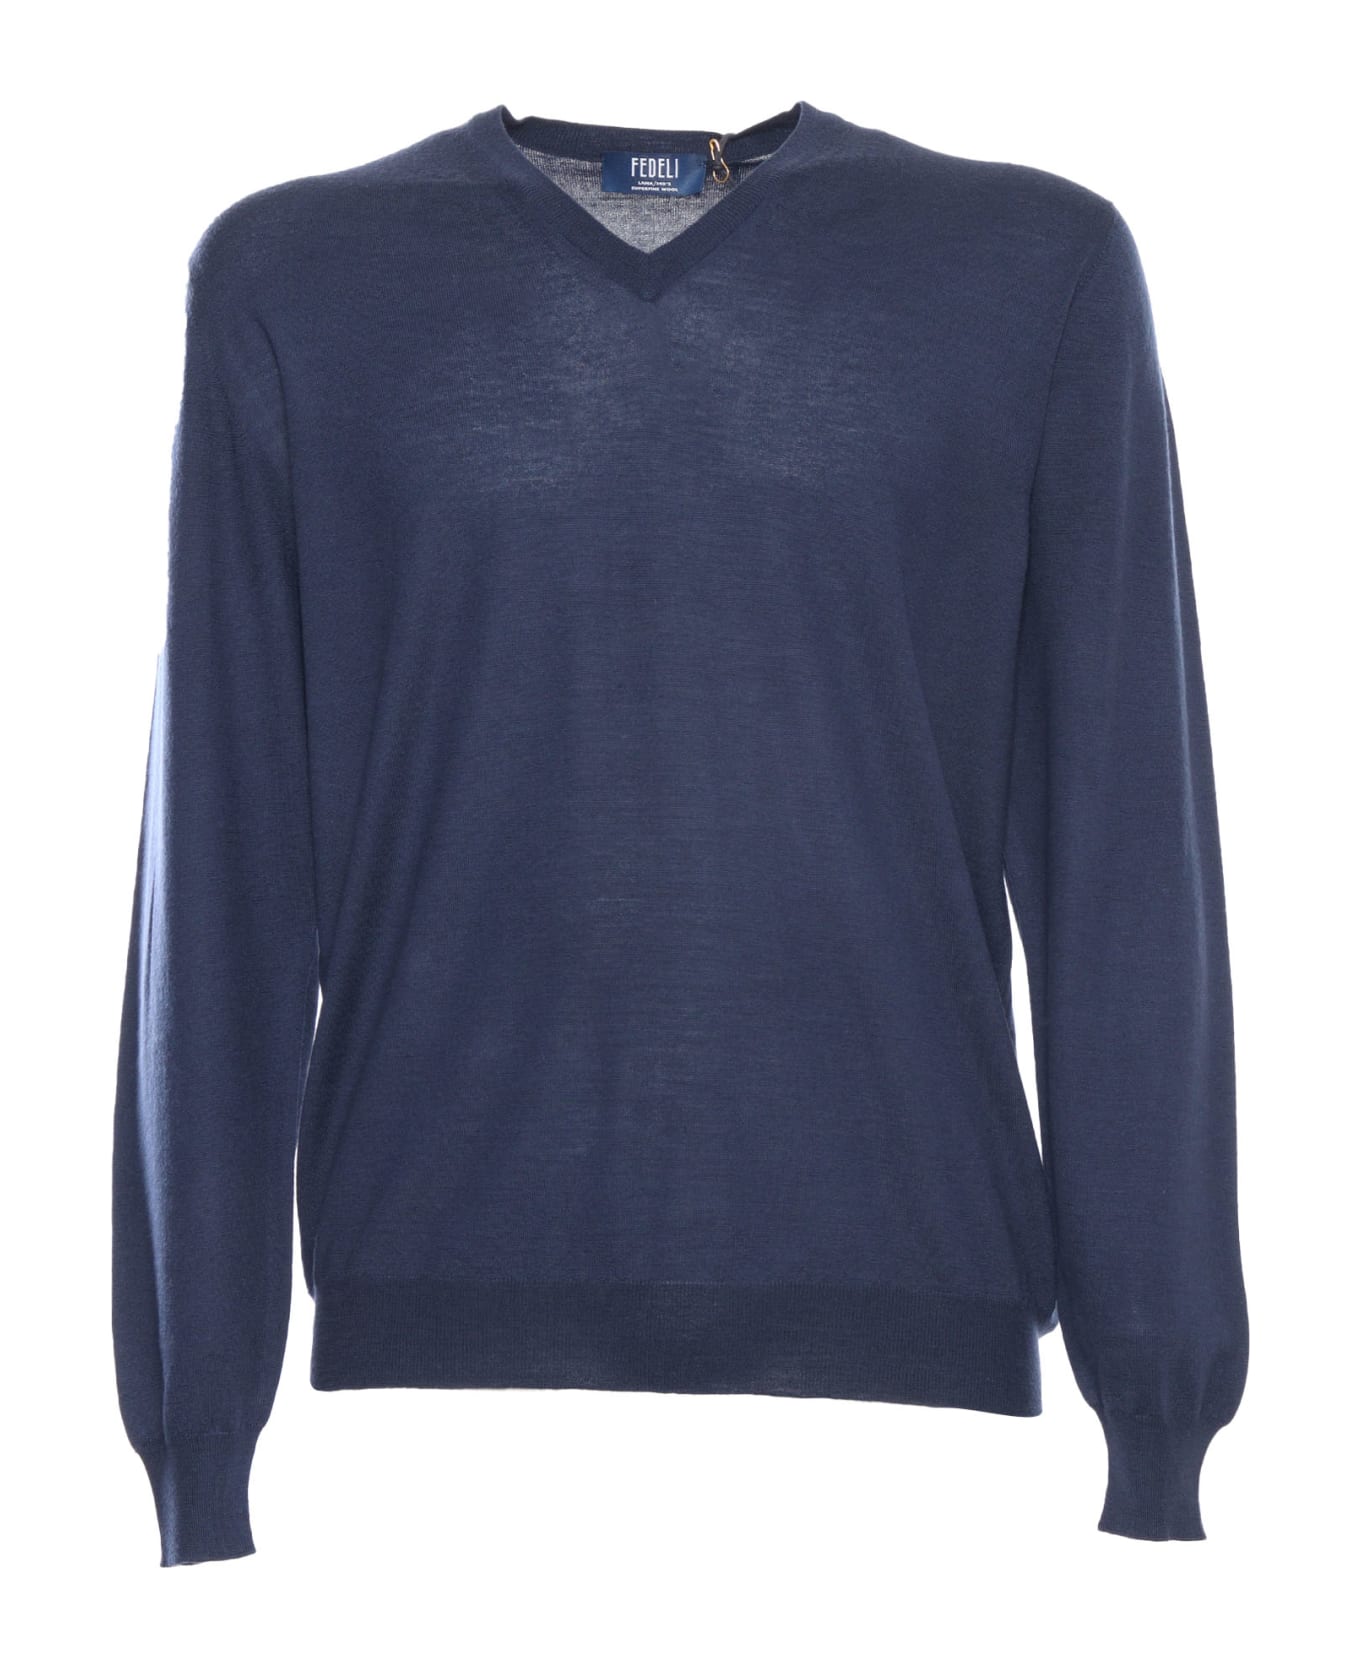 Fedeli Blue Sweater - BLUE